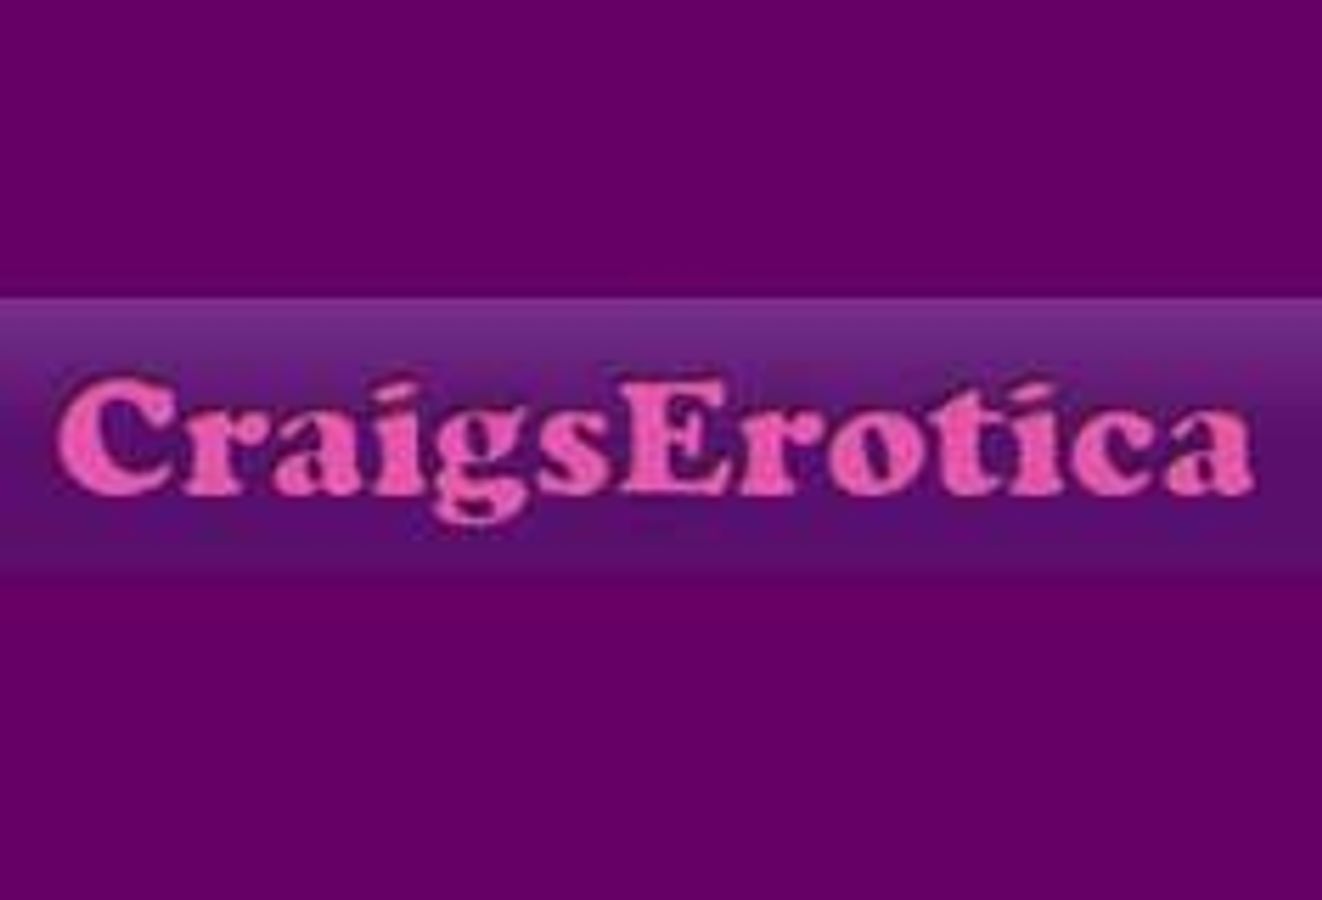 Craig's Erotica